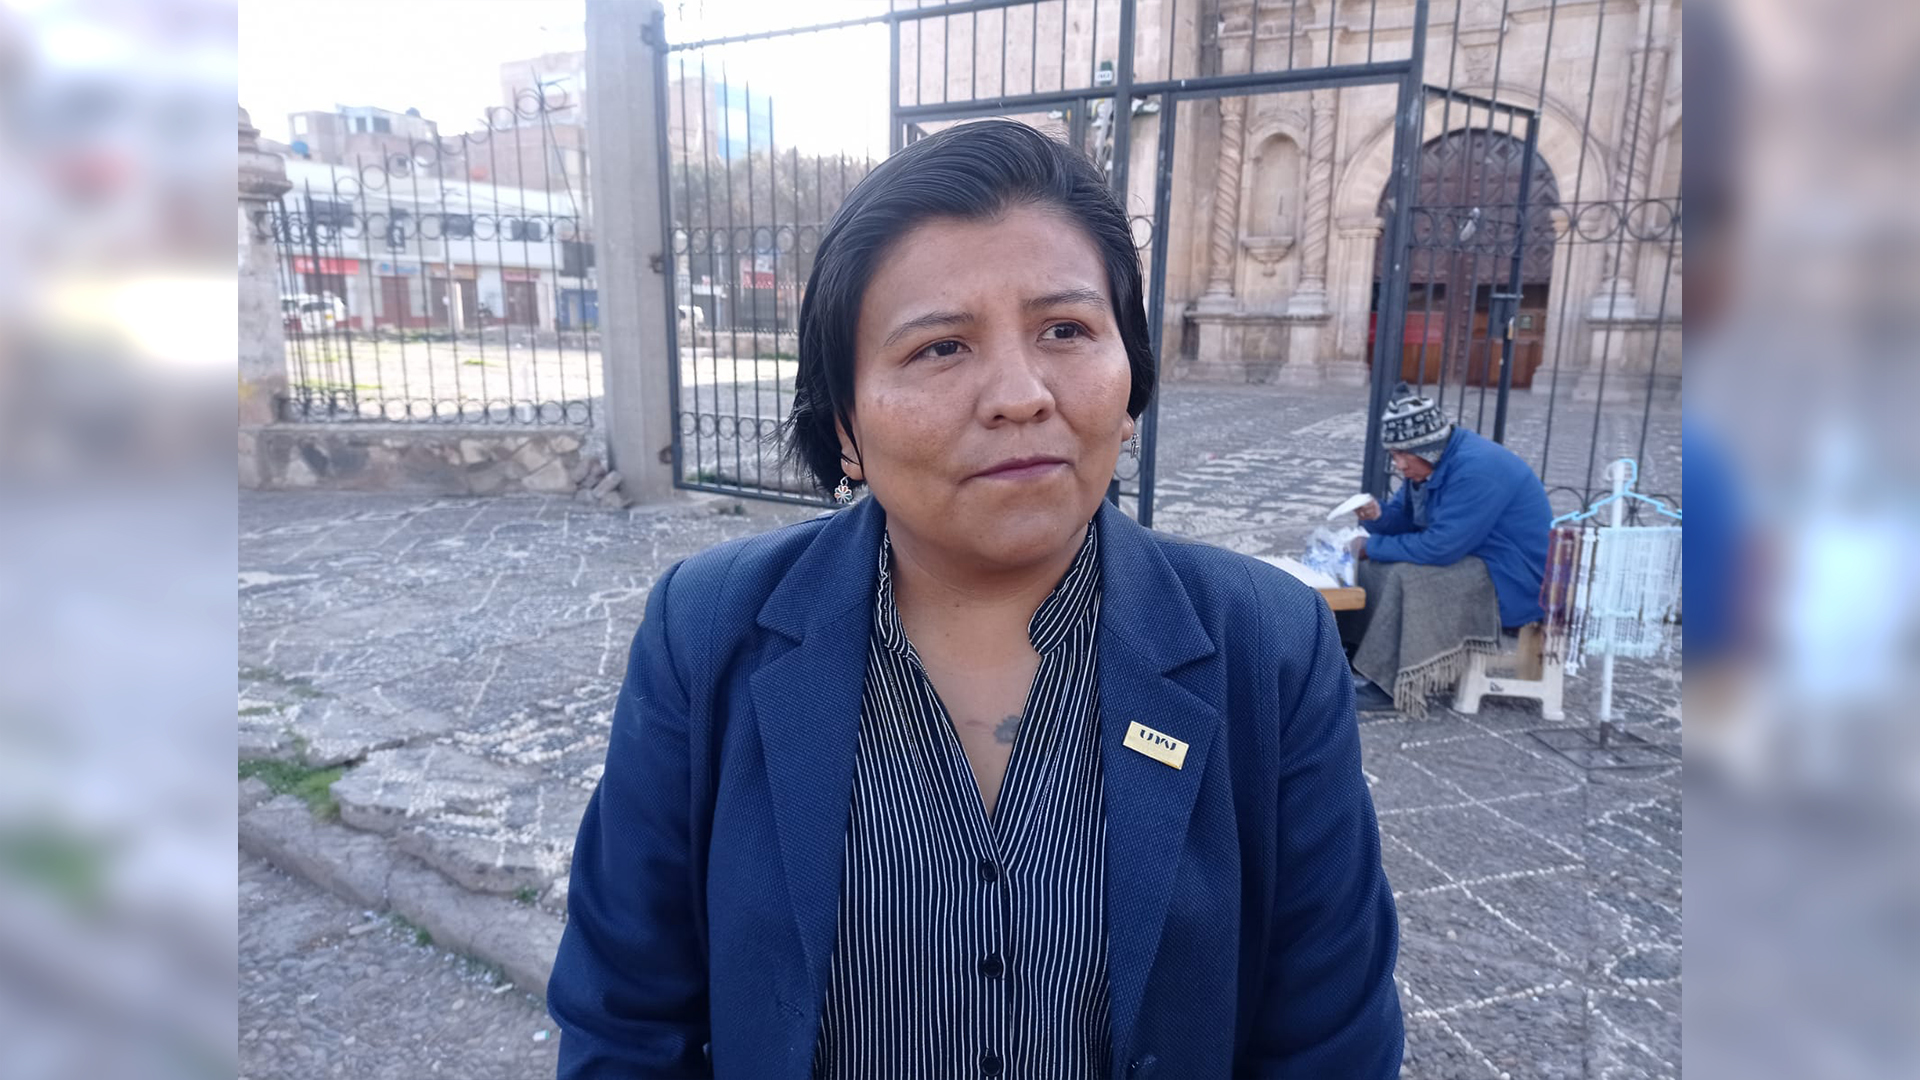 Diana Pasaca Apaza, integrante de la Red Interamericana de Mujeres